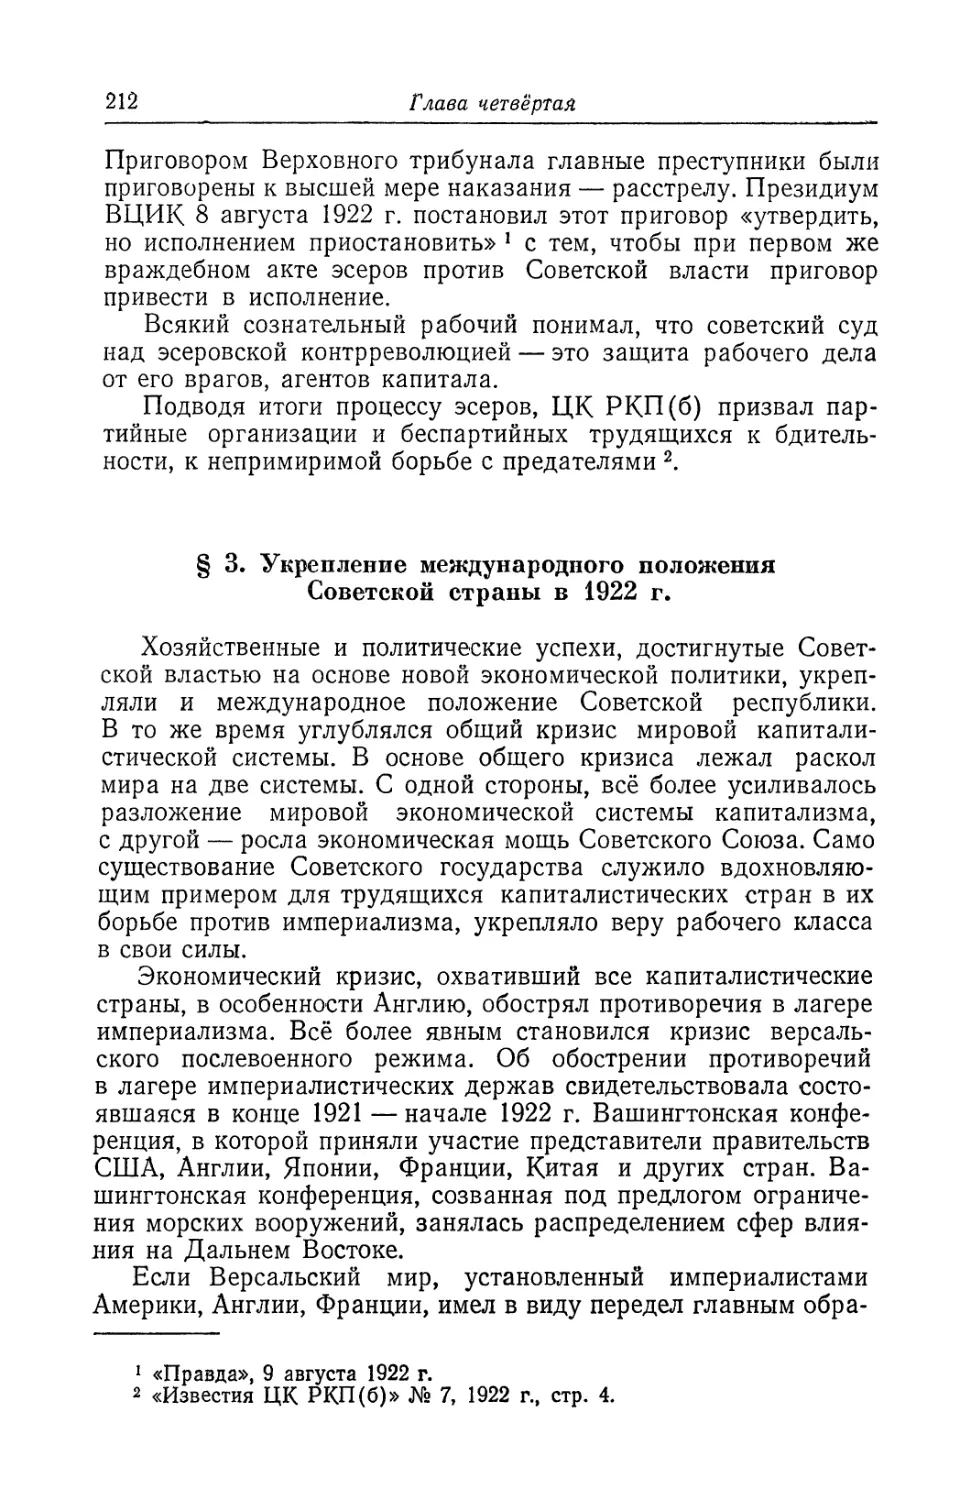 § 3. Укрепление международного положения Советской страны в 1922 г